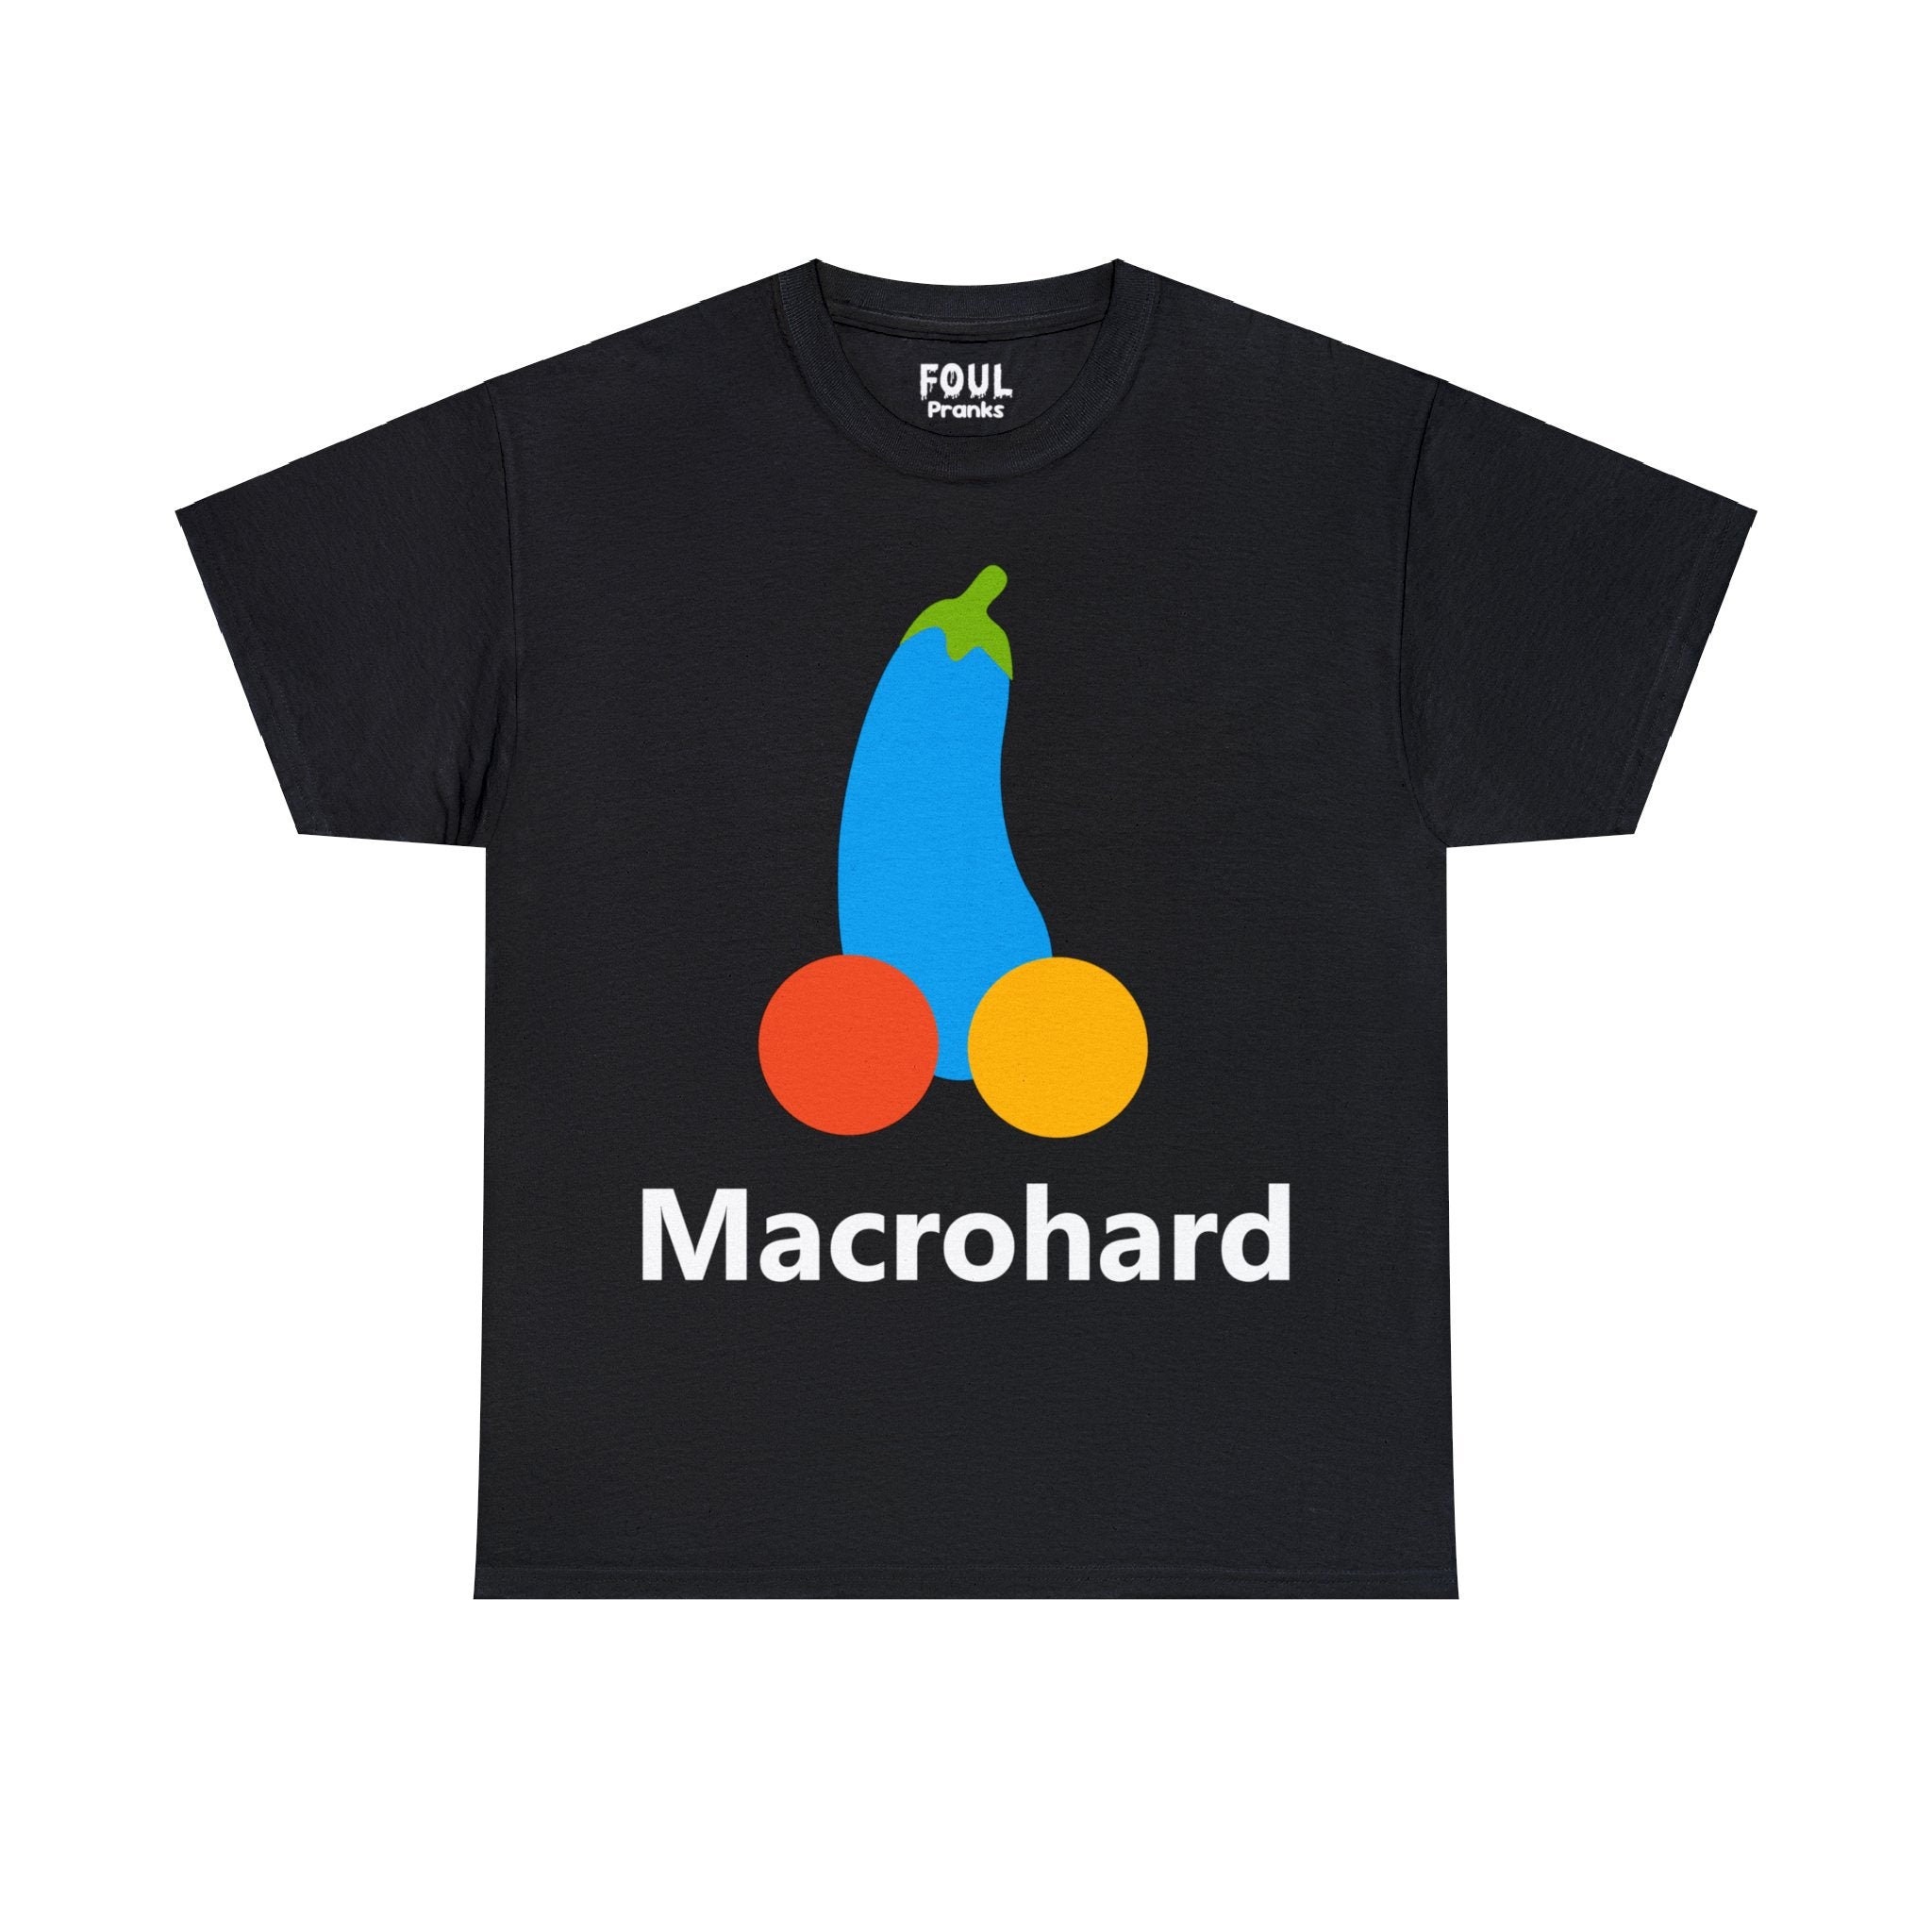 Macrohard